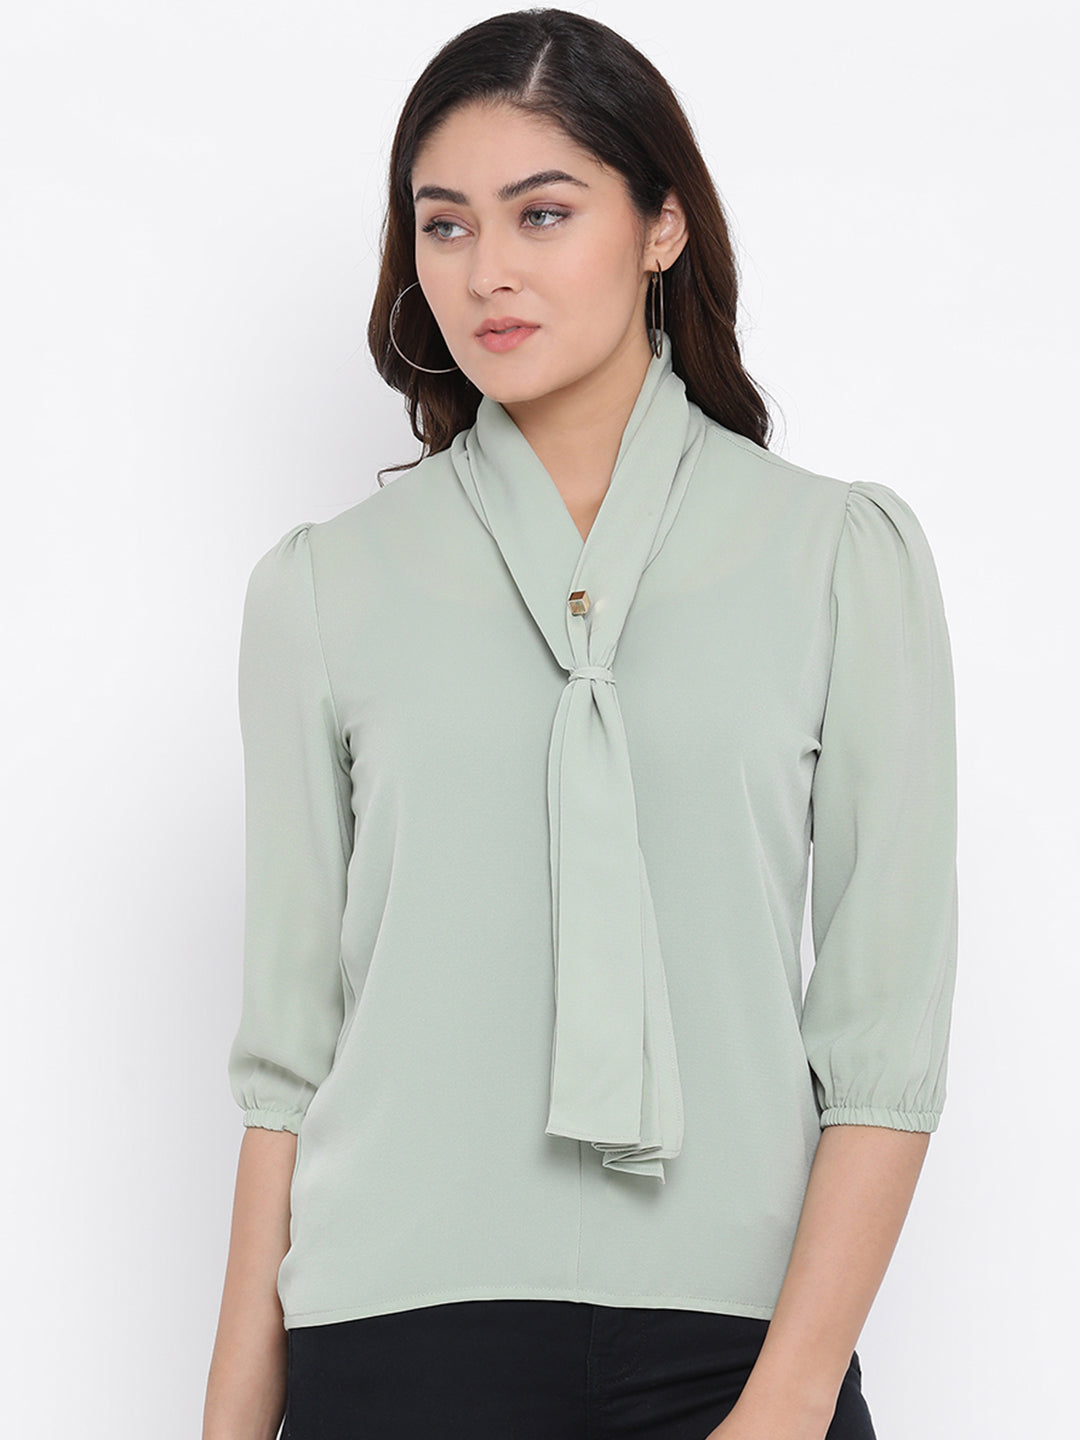 Mint Green Mandarin Collar Tops - Women Tops